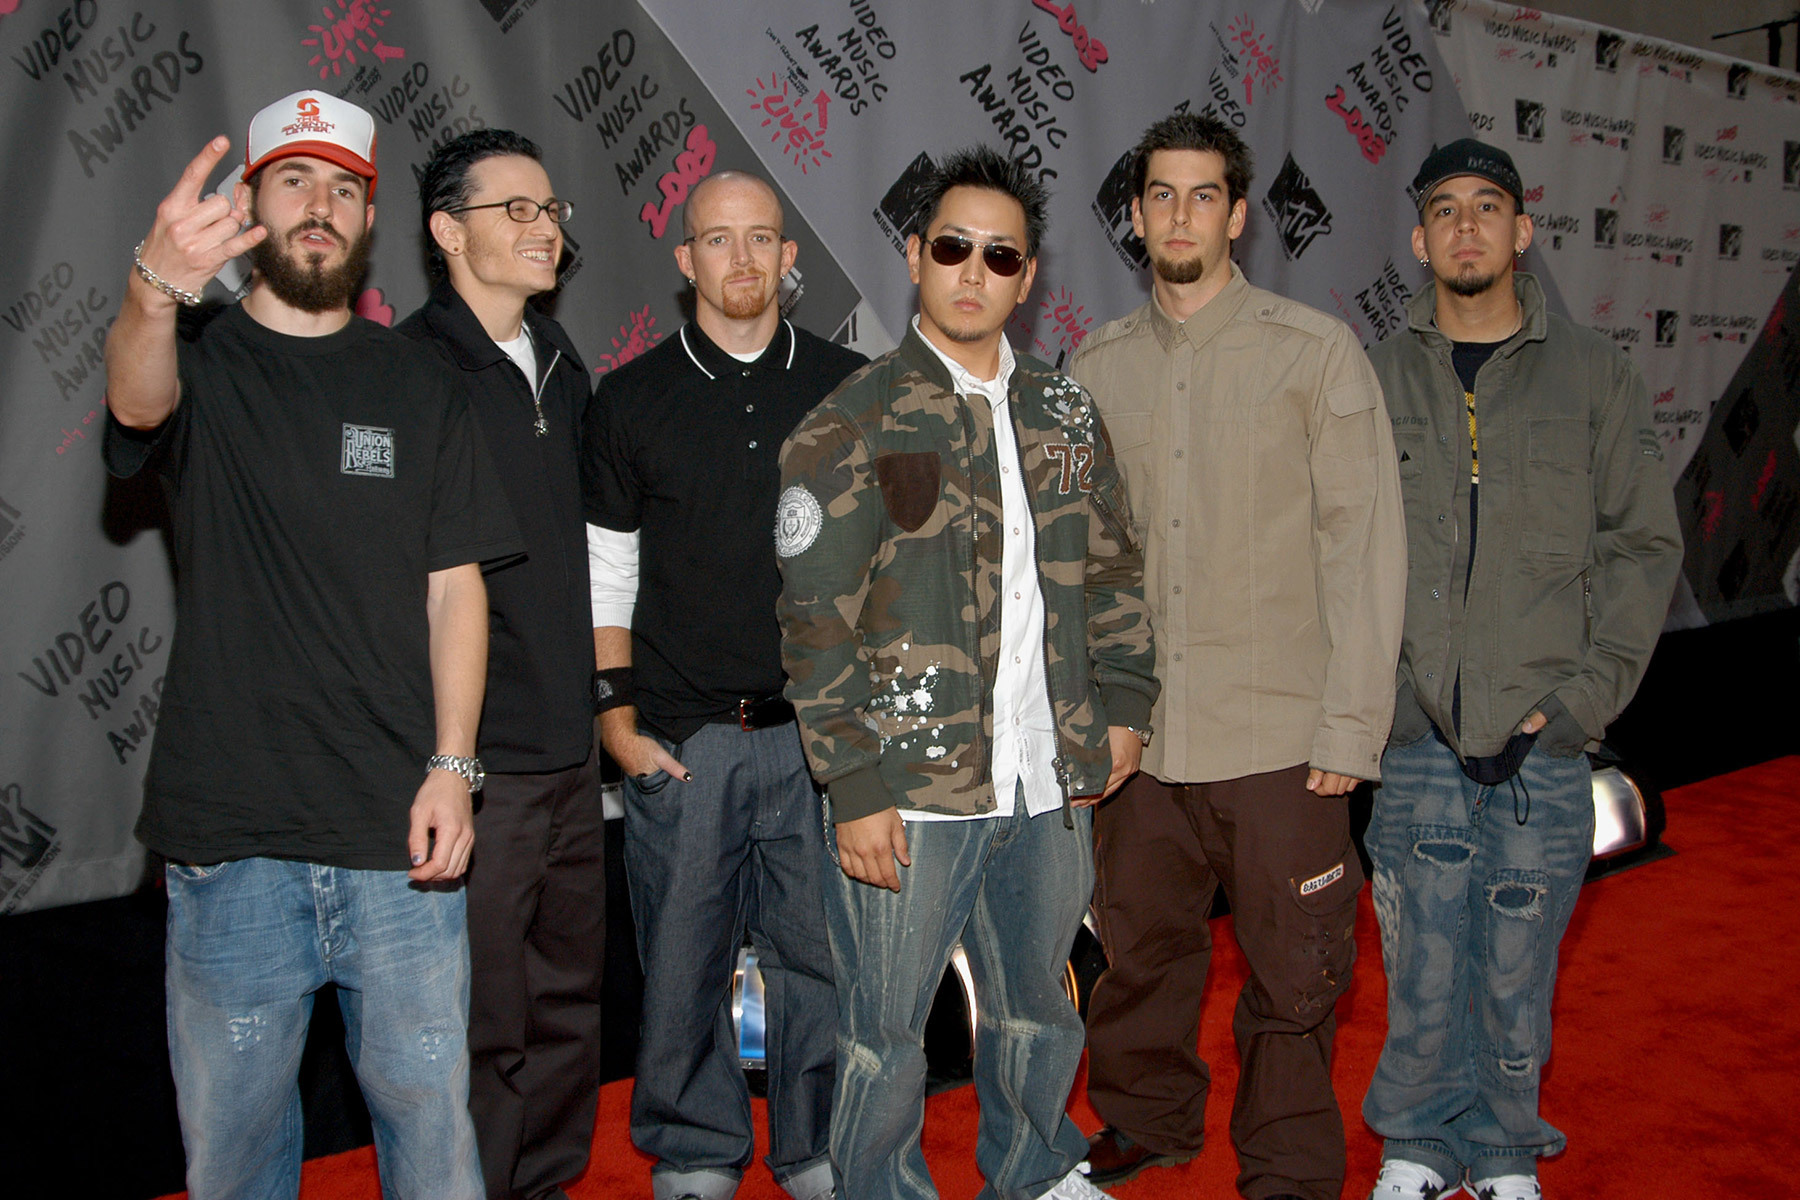 Рок-группа Linkin Park анонсировала выход ранее неизданной песни «Lost» из архивов альбома «Meteora»